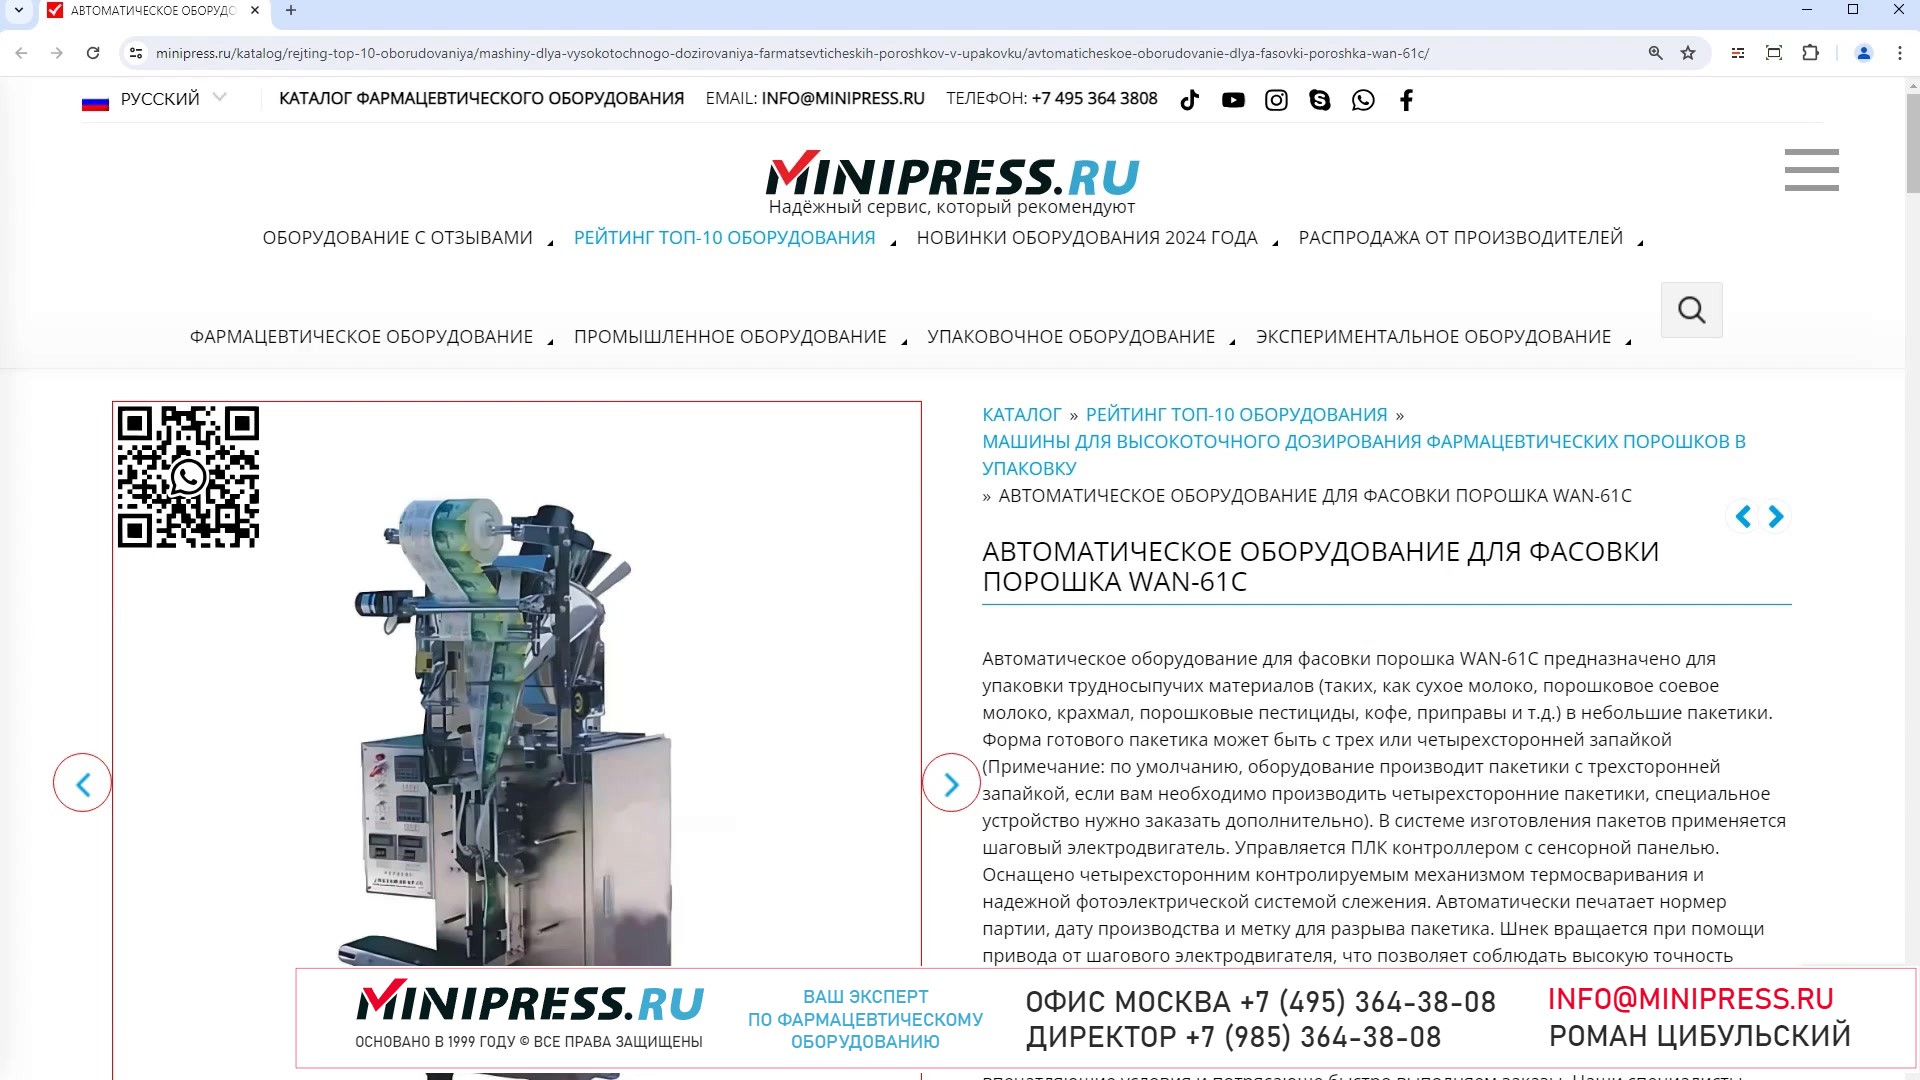 Minipress.ru Автоматическое оборудование для фасовки порошка WAN-61C